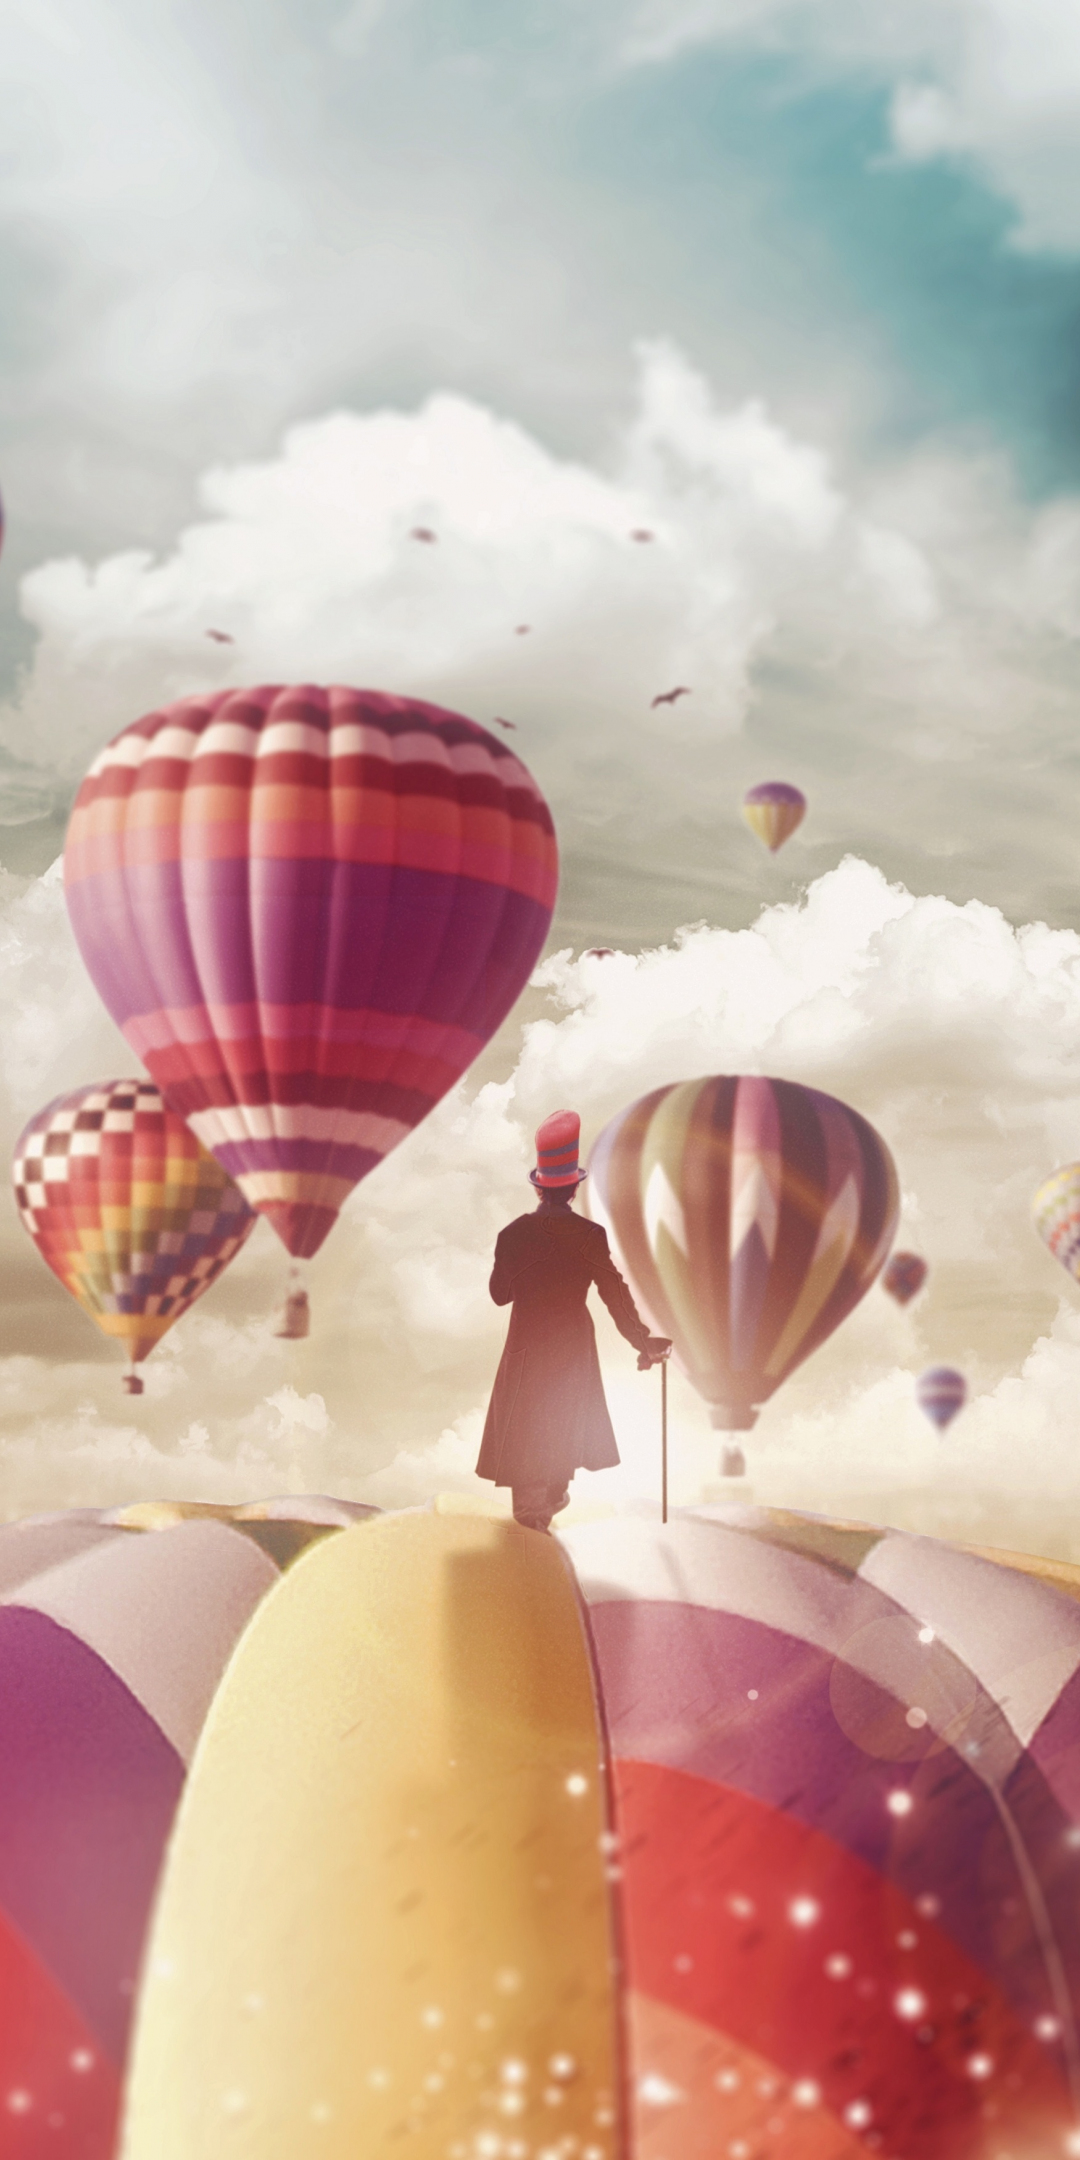 Magician, hot air balloons, ride, fantasy, surreal, 1080x2160 wallpaper